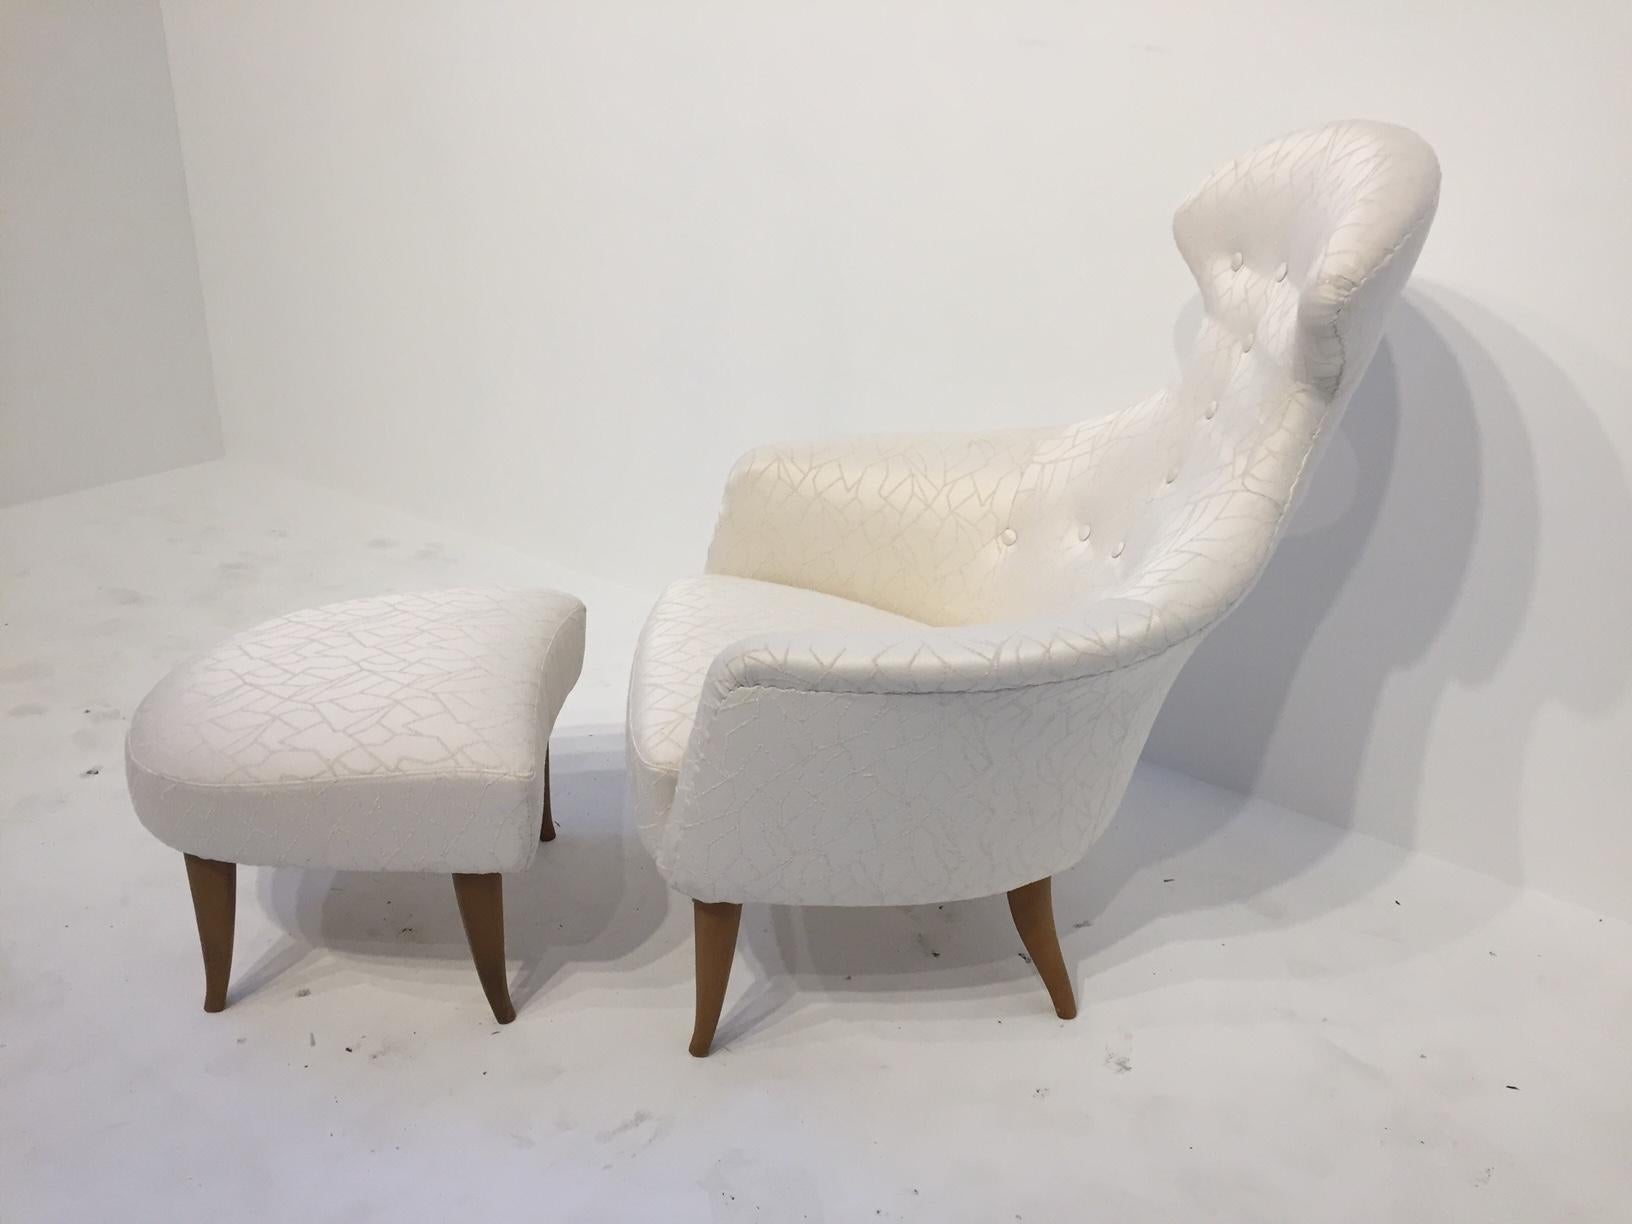 Big Eva Loundge Chair with Ottoman by Kerstin Hörlin Holmquist (Schwedisch)